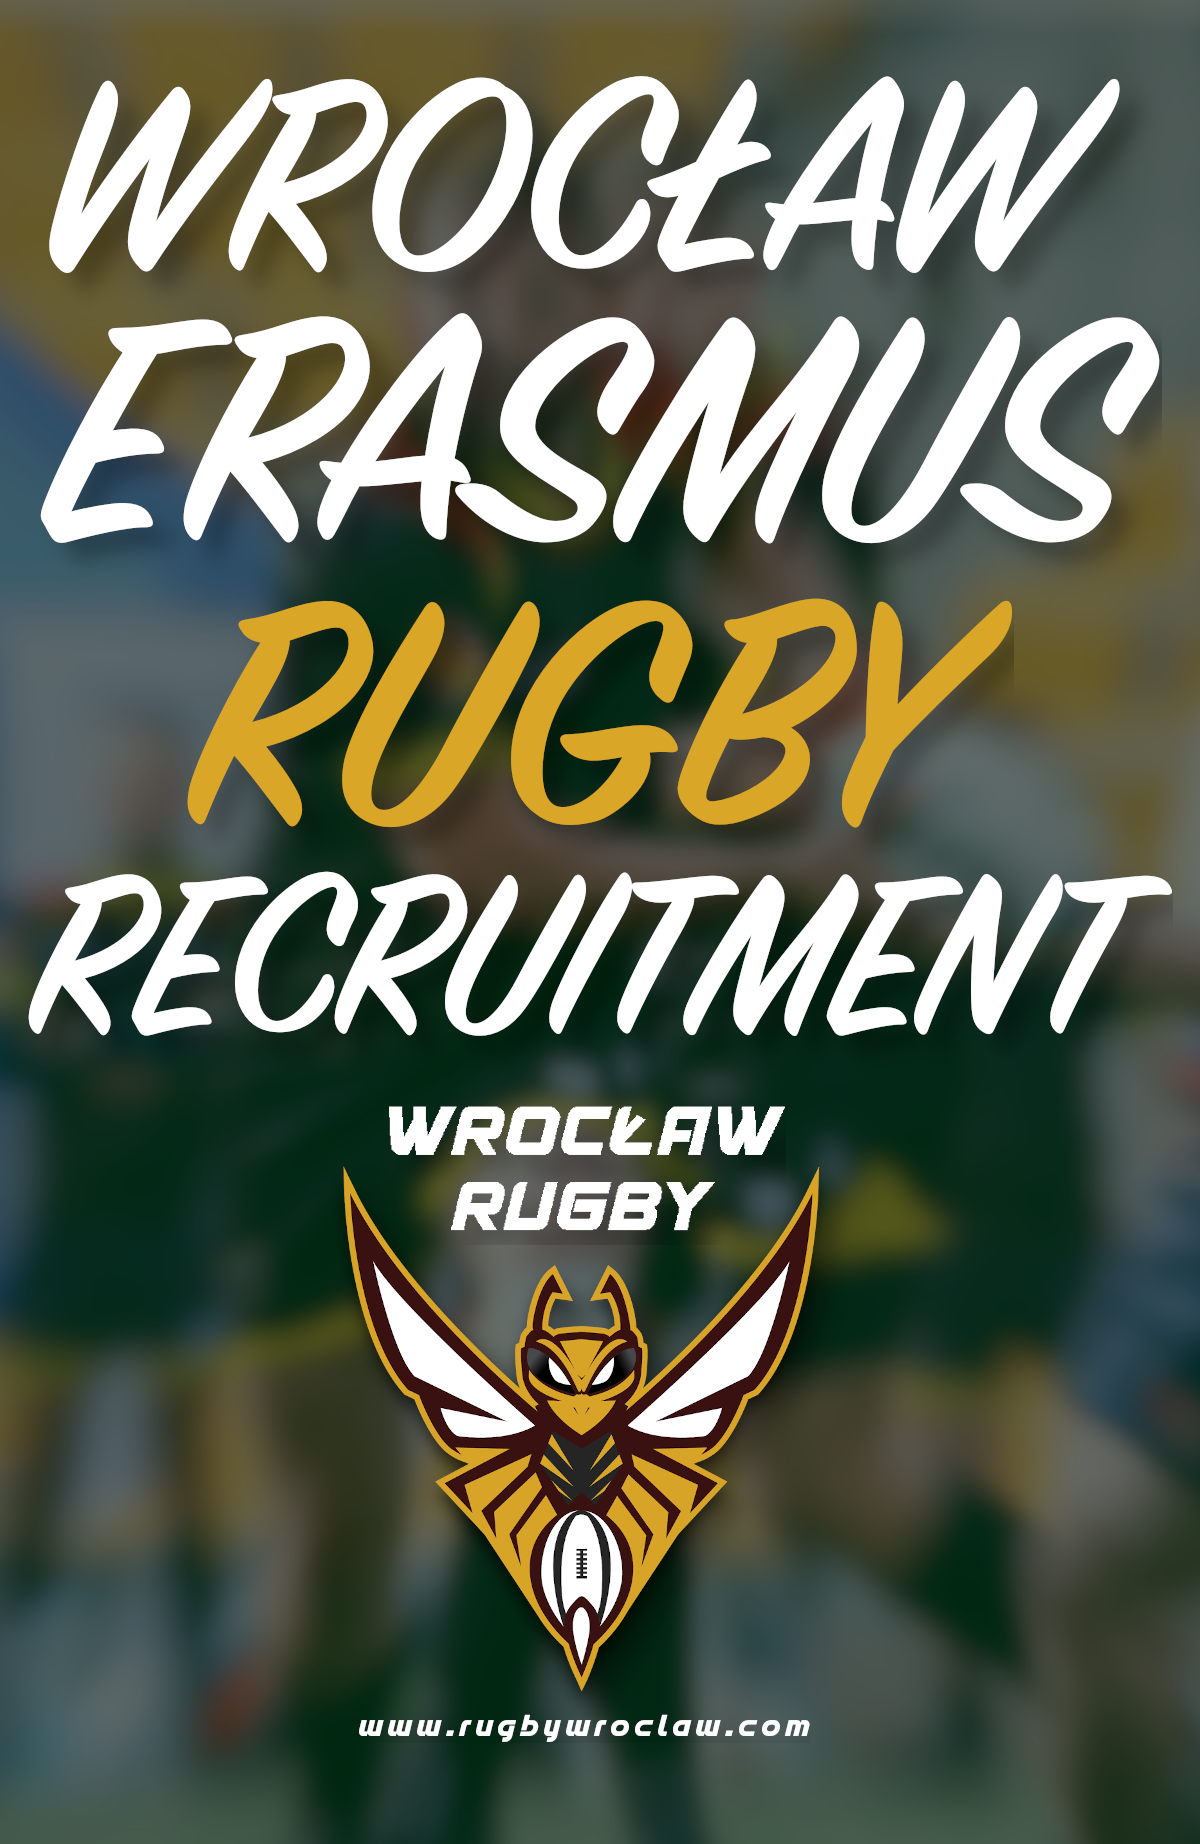 Erasmus Rugby recruitment